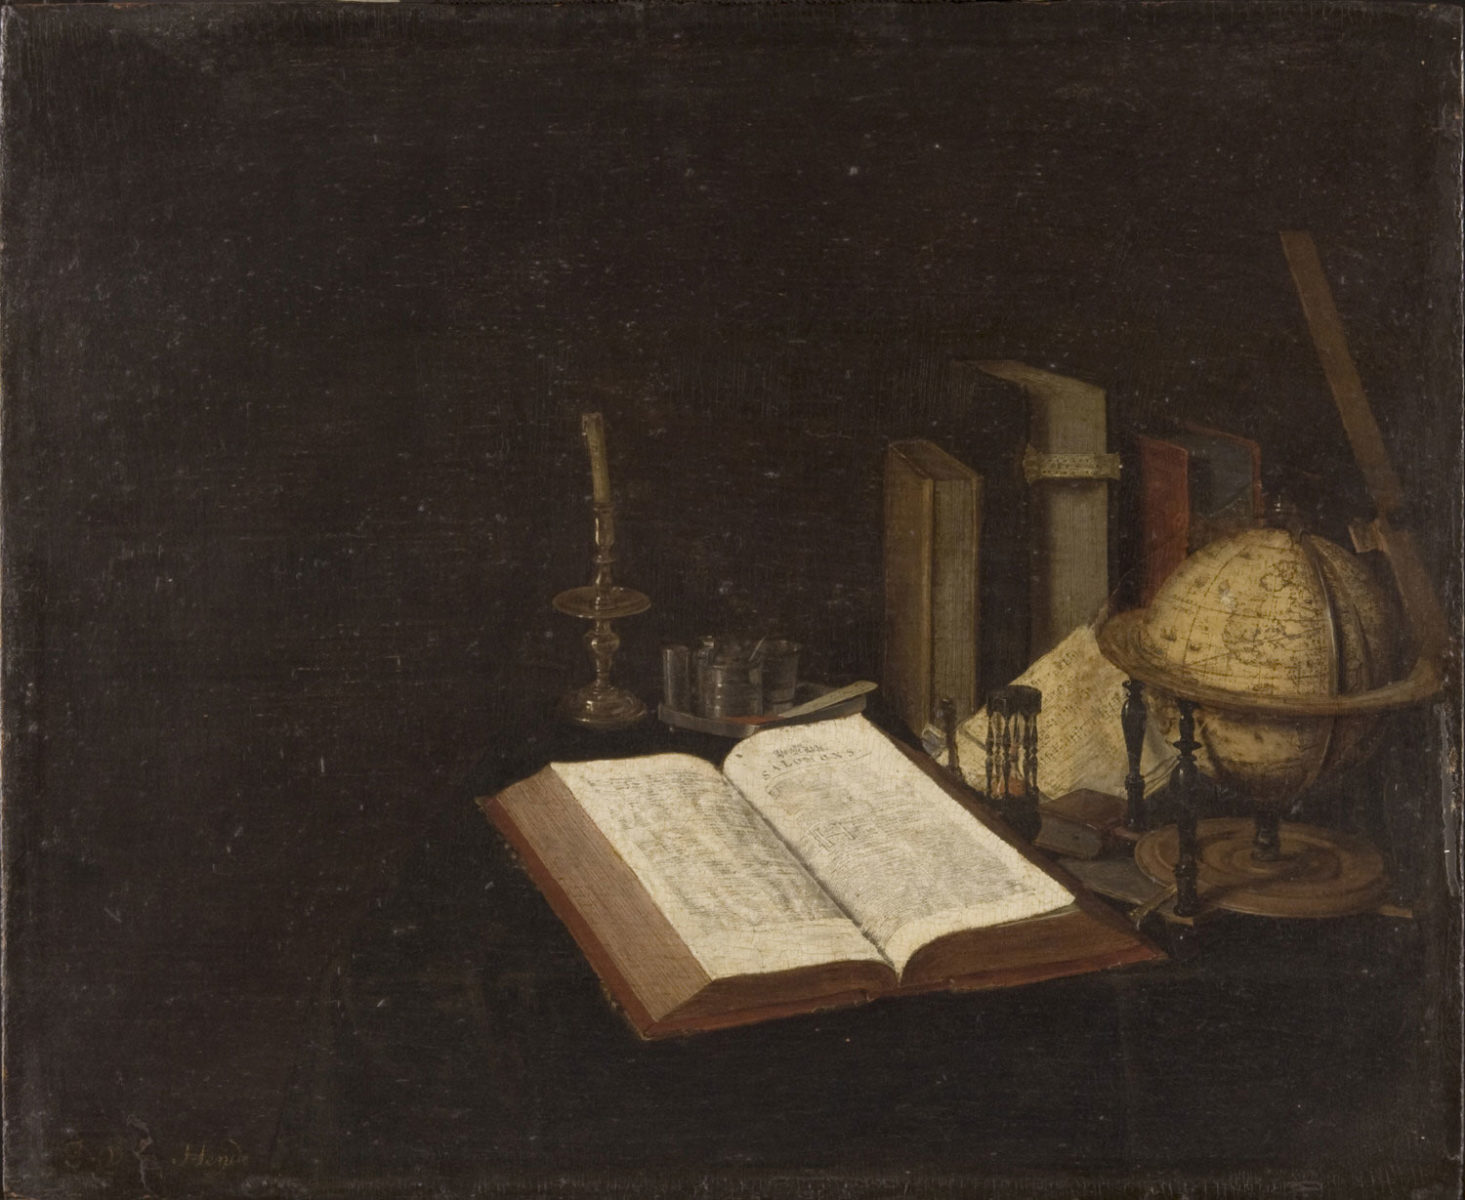 Jan van der Heyden “Still Life with Books and a Globe” - O que são clássicos literários?